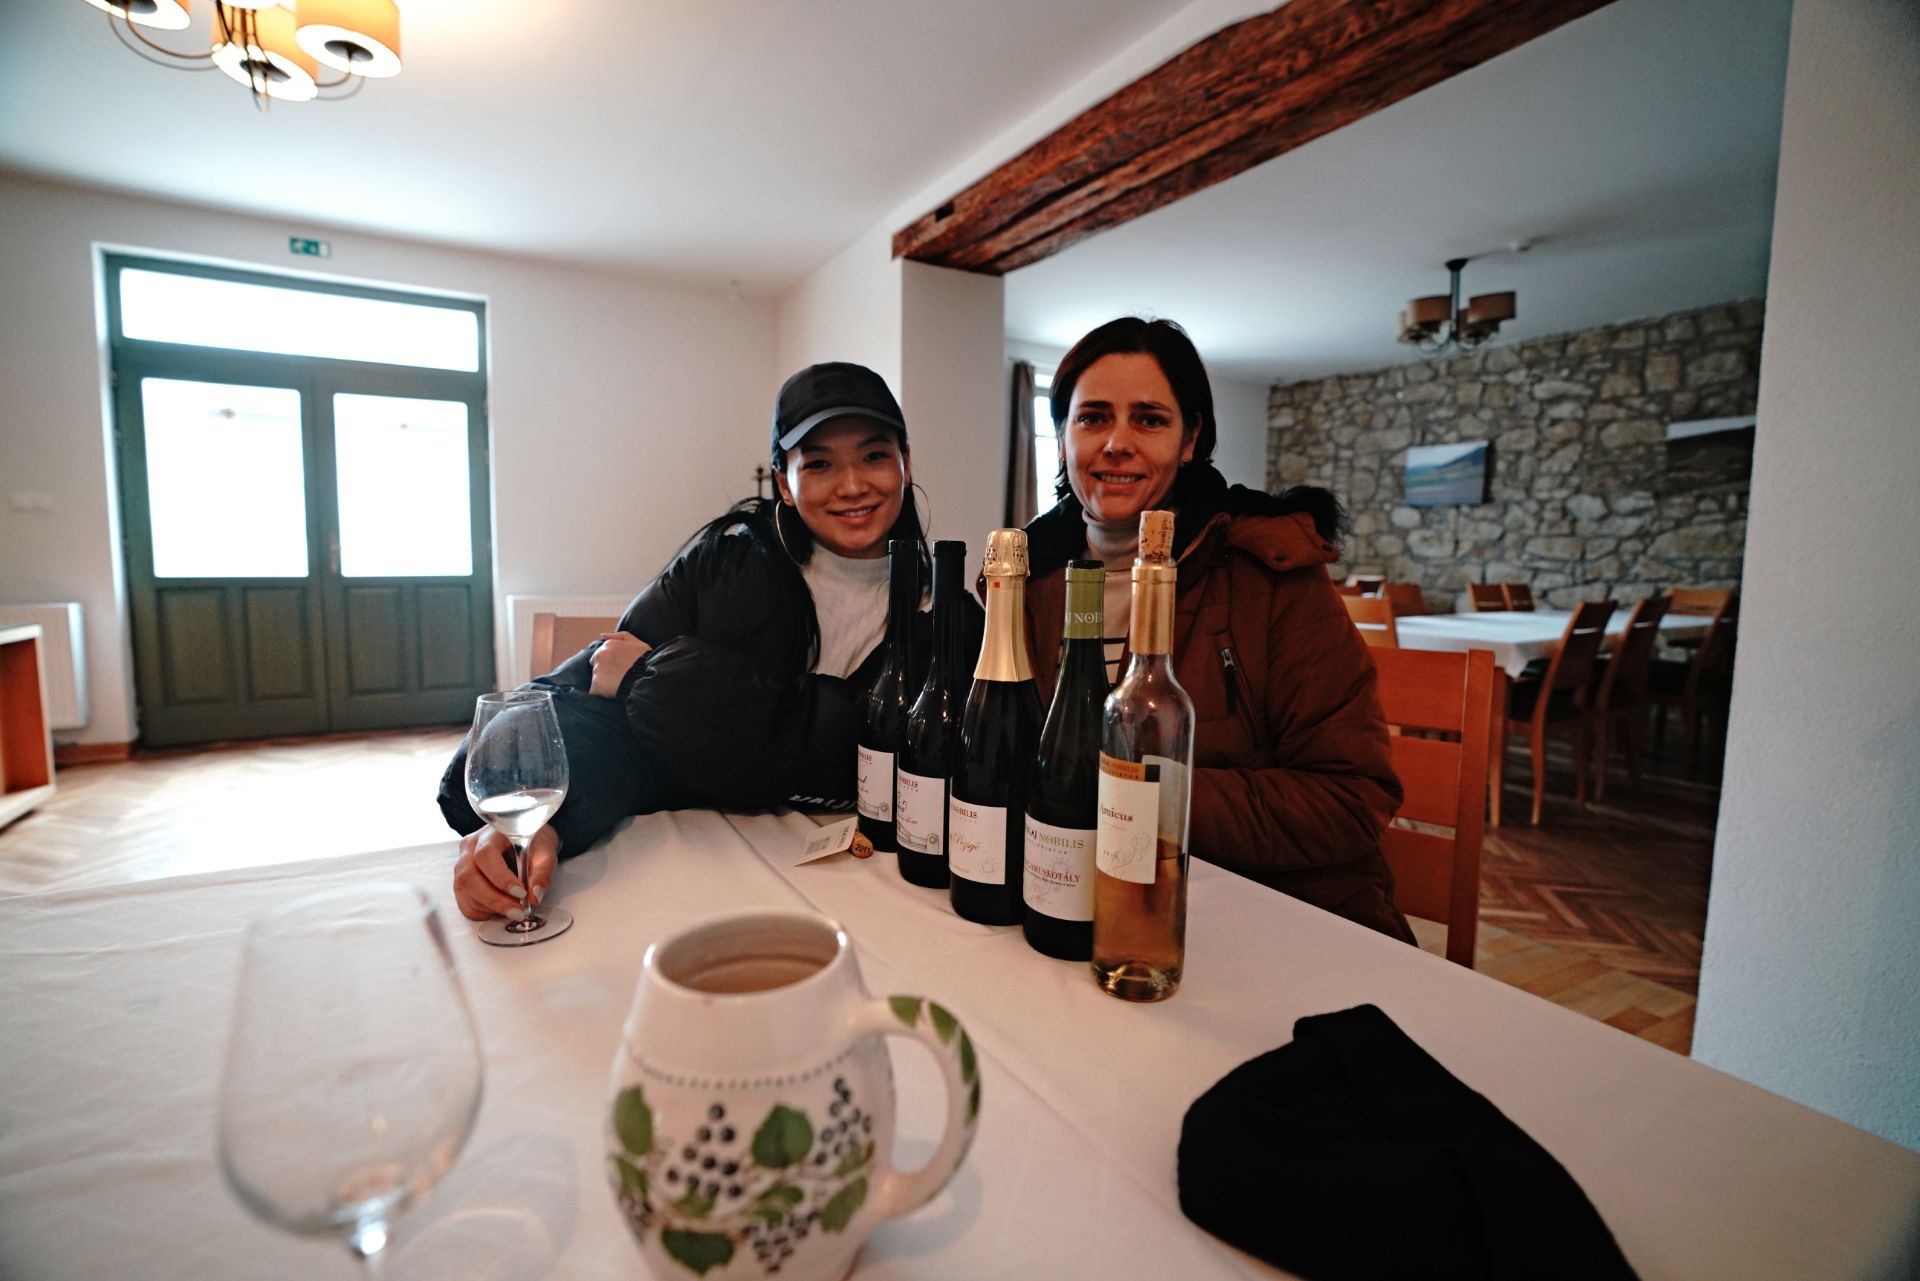 TOKAJ NOBILIS 酒庄 位于匈牙利托考伊镇，这是一家家庭式的酒庄，由一对夫妻一起管理庄园，